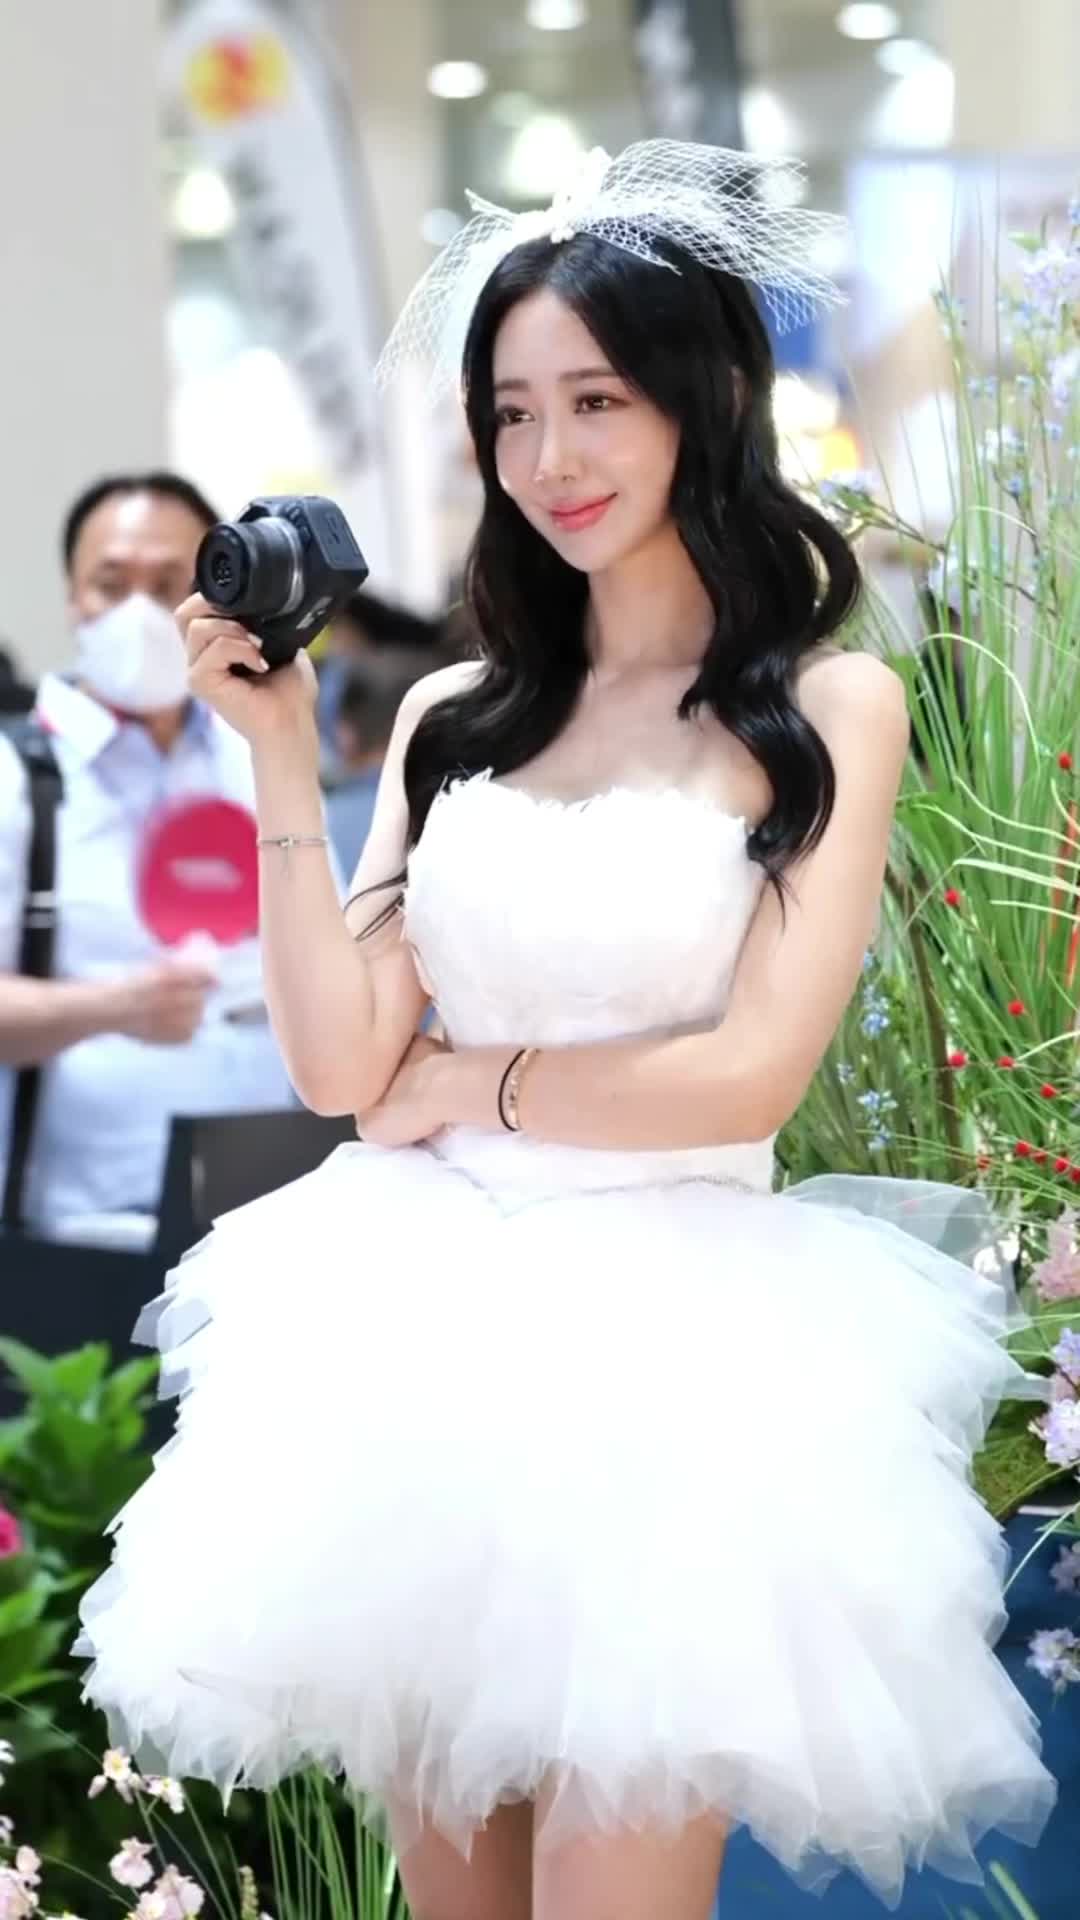 【ウェディングドレスのS級美女】◇ Canon EOS 90D กล้อง DSLR - ประกันศูนย์ ใหม่ เพียง ฿80,873.00 - 109,673.00! #UnlimitedHPInk 